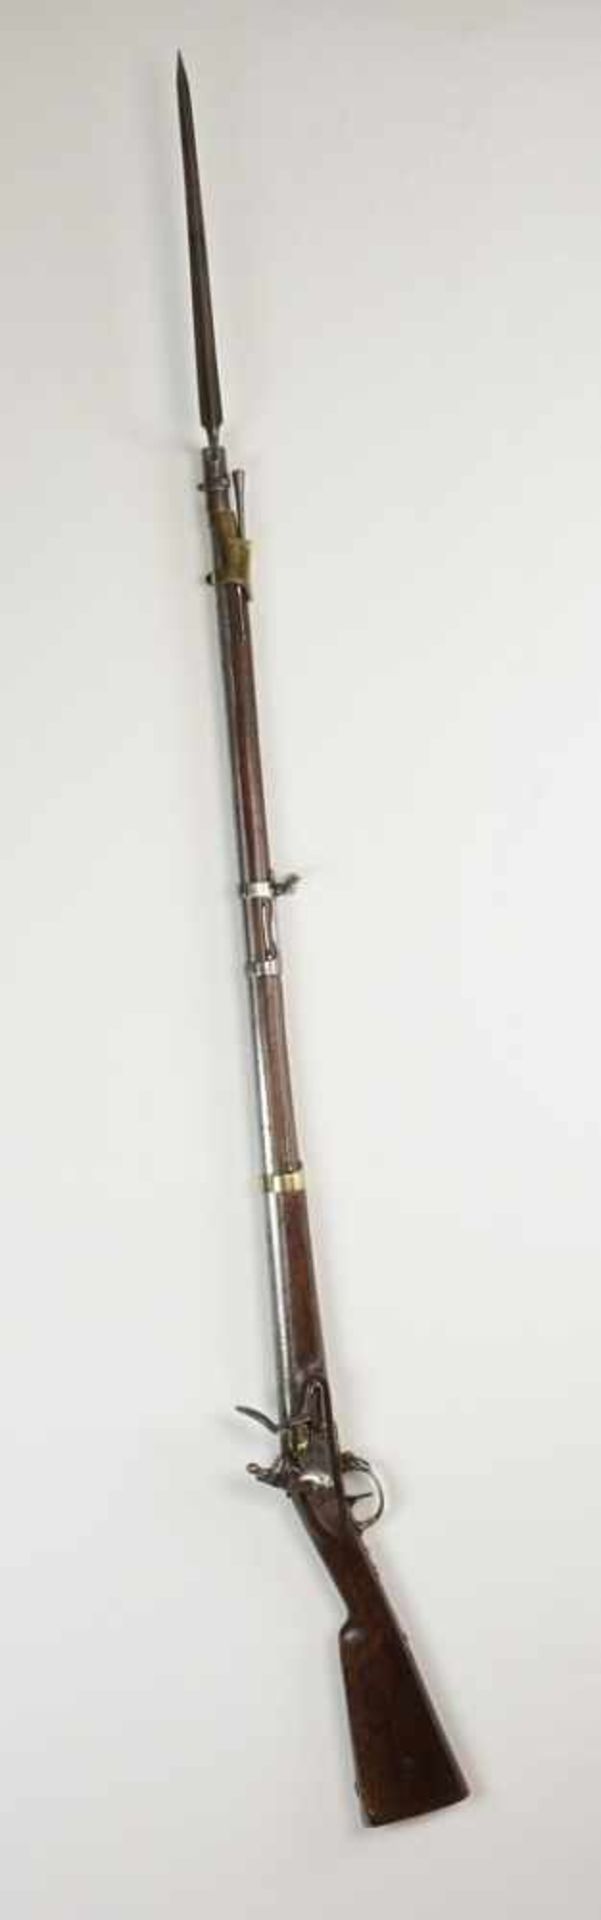 Tulle Dragoner Steinschlossgewehr mit Bajonett Frankreich, 18151. französisches Kaiserreich, - Image 4 of 9